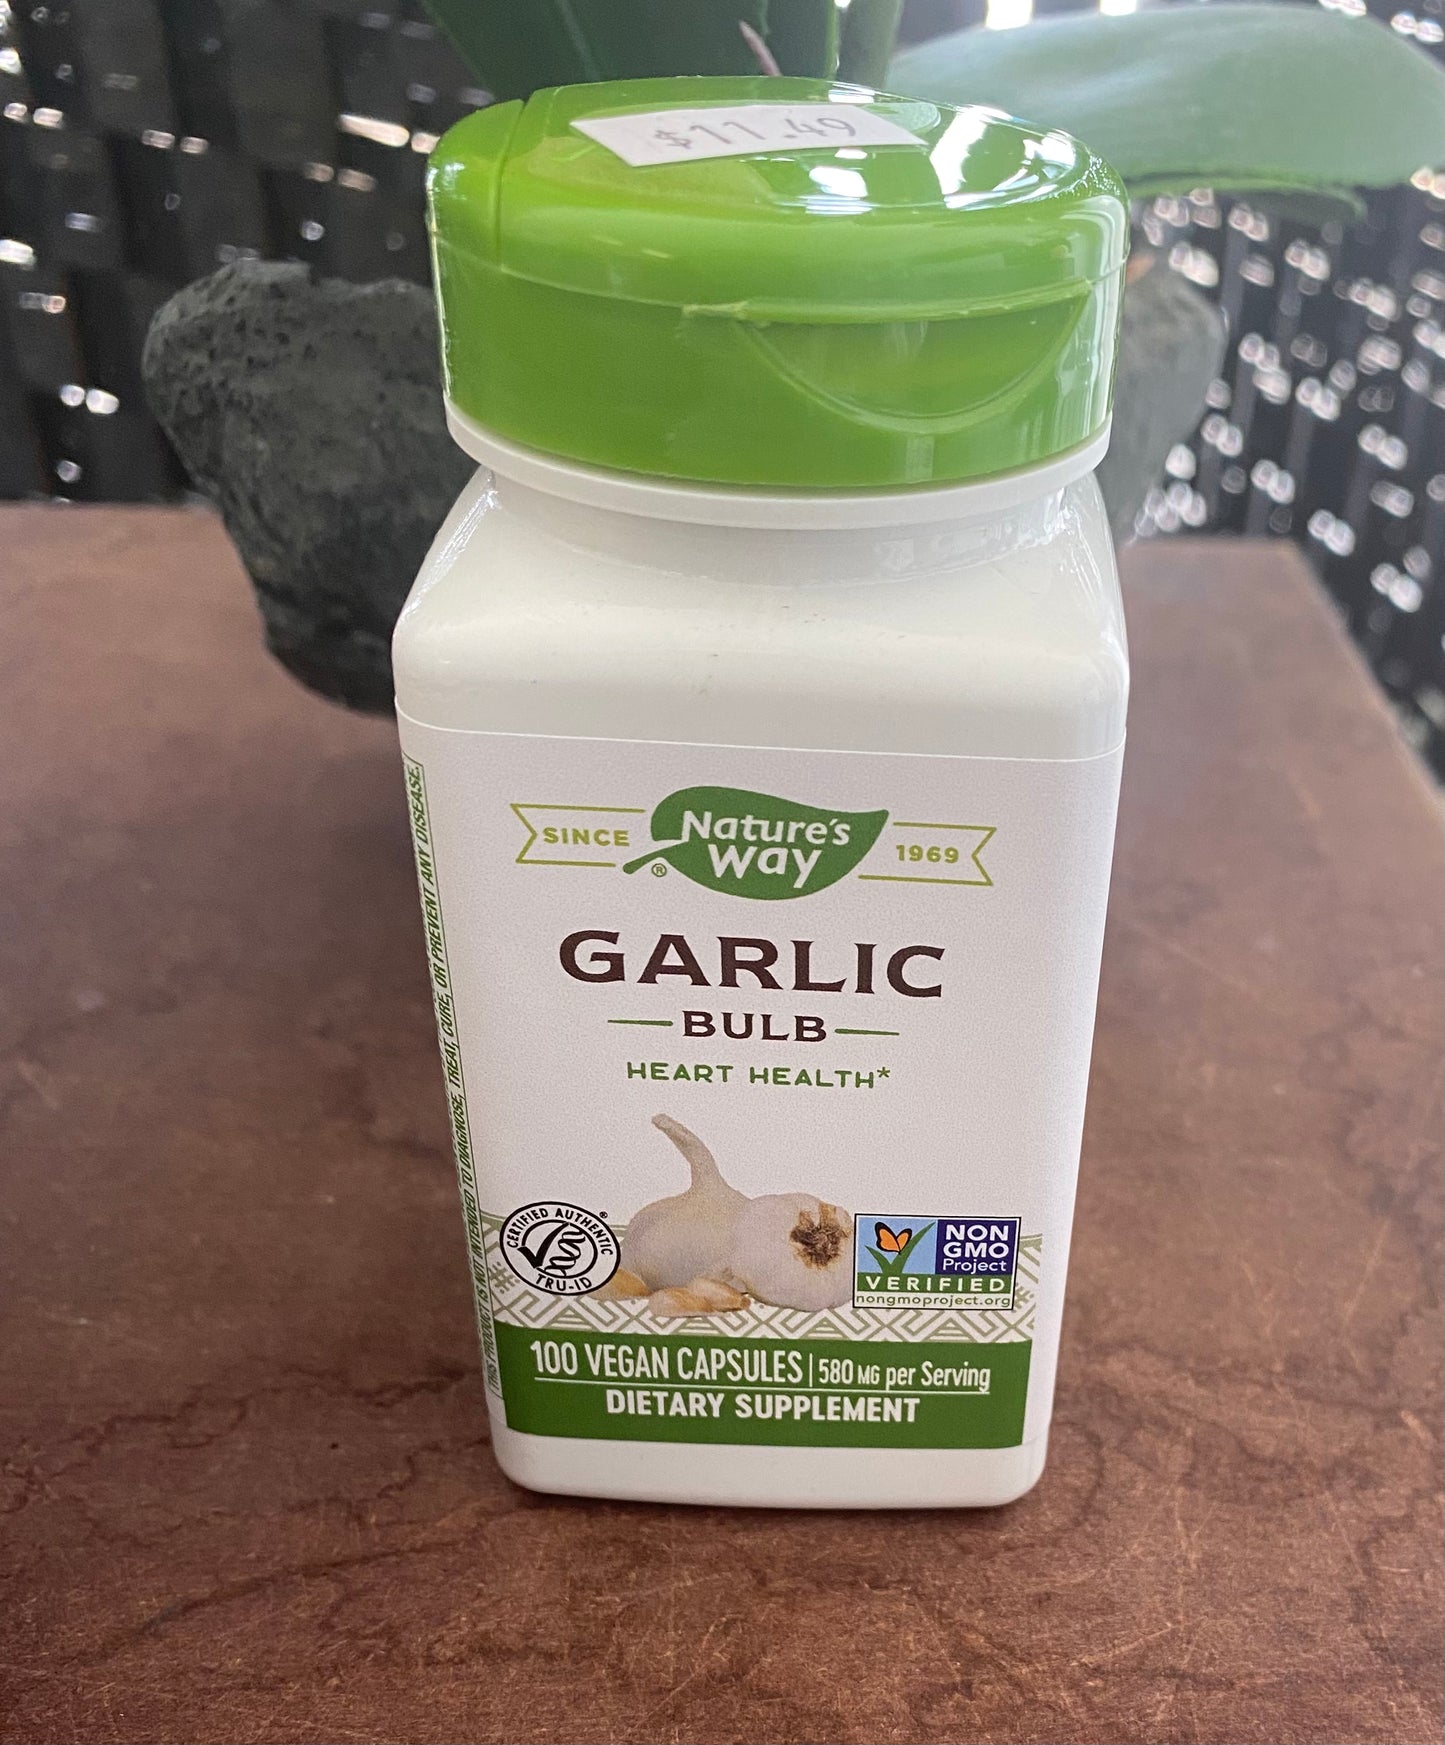 Garlic Bulb (100 vegan capsules)